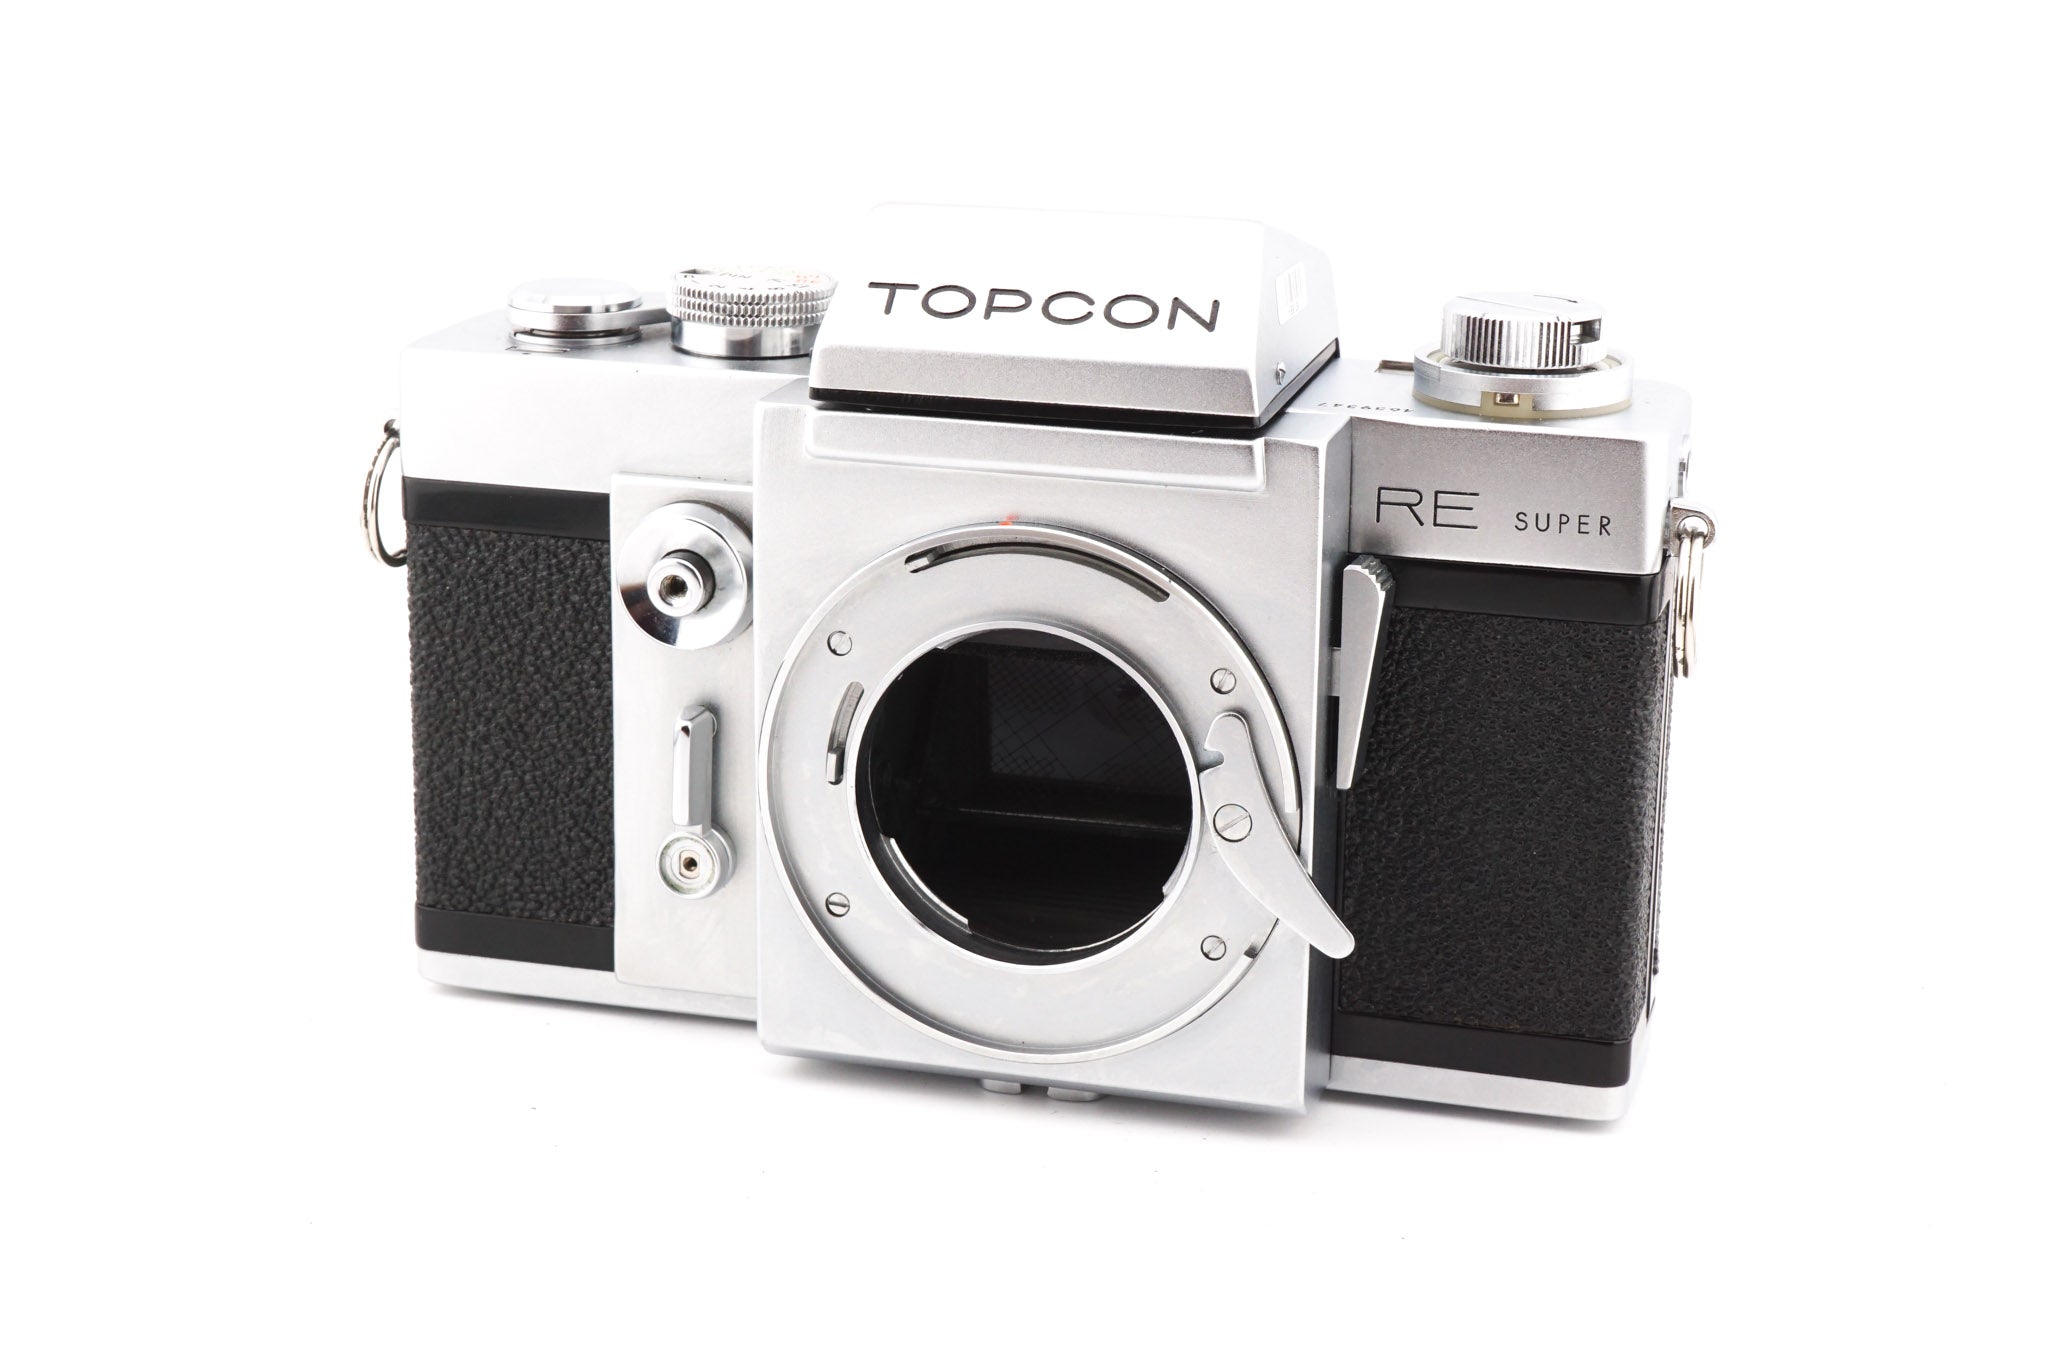 歴史に残るカメラ TOPCON RE Super Topcor 58/1.4 - フィルムカメラ